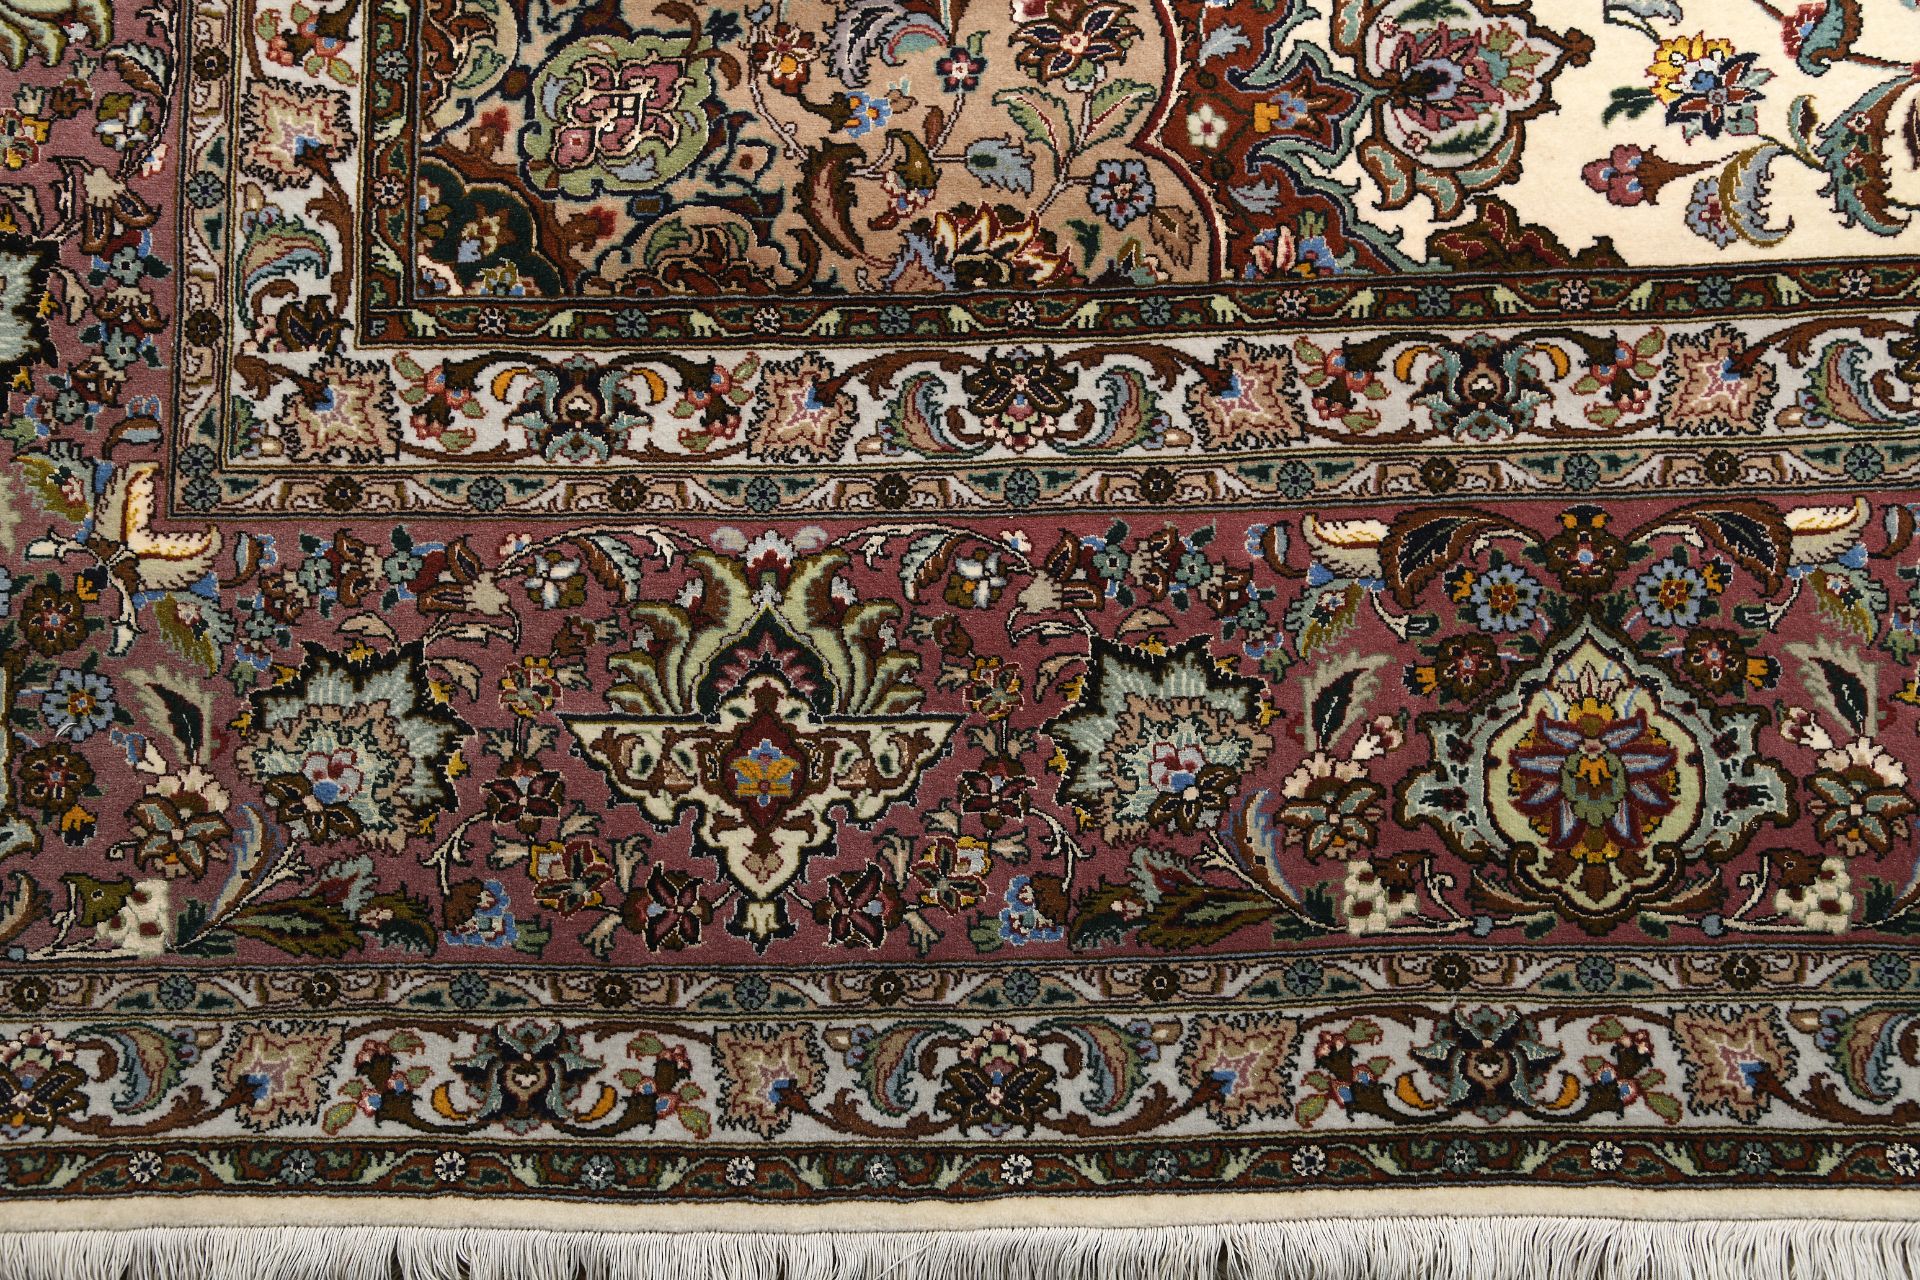 A large carpet